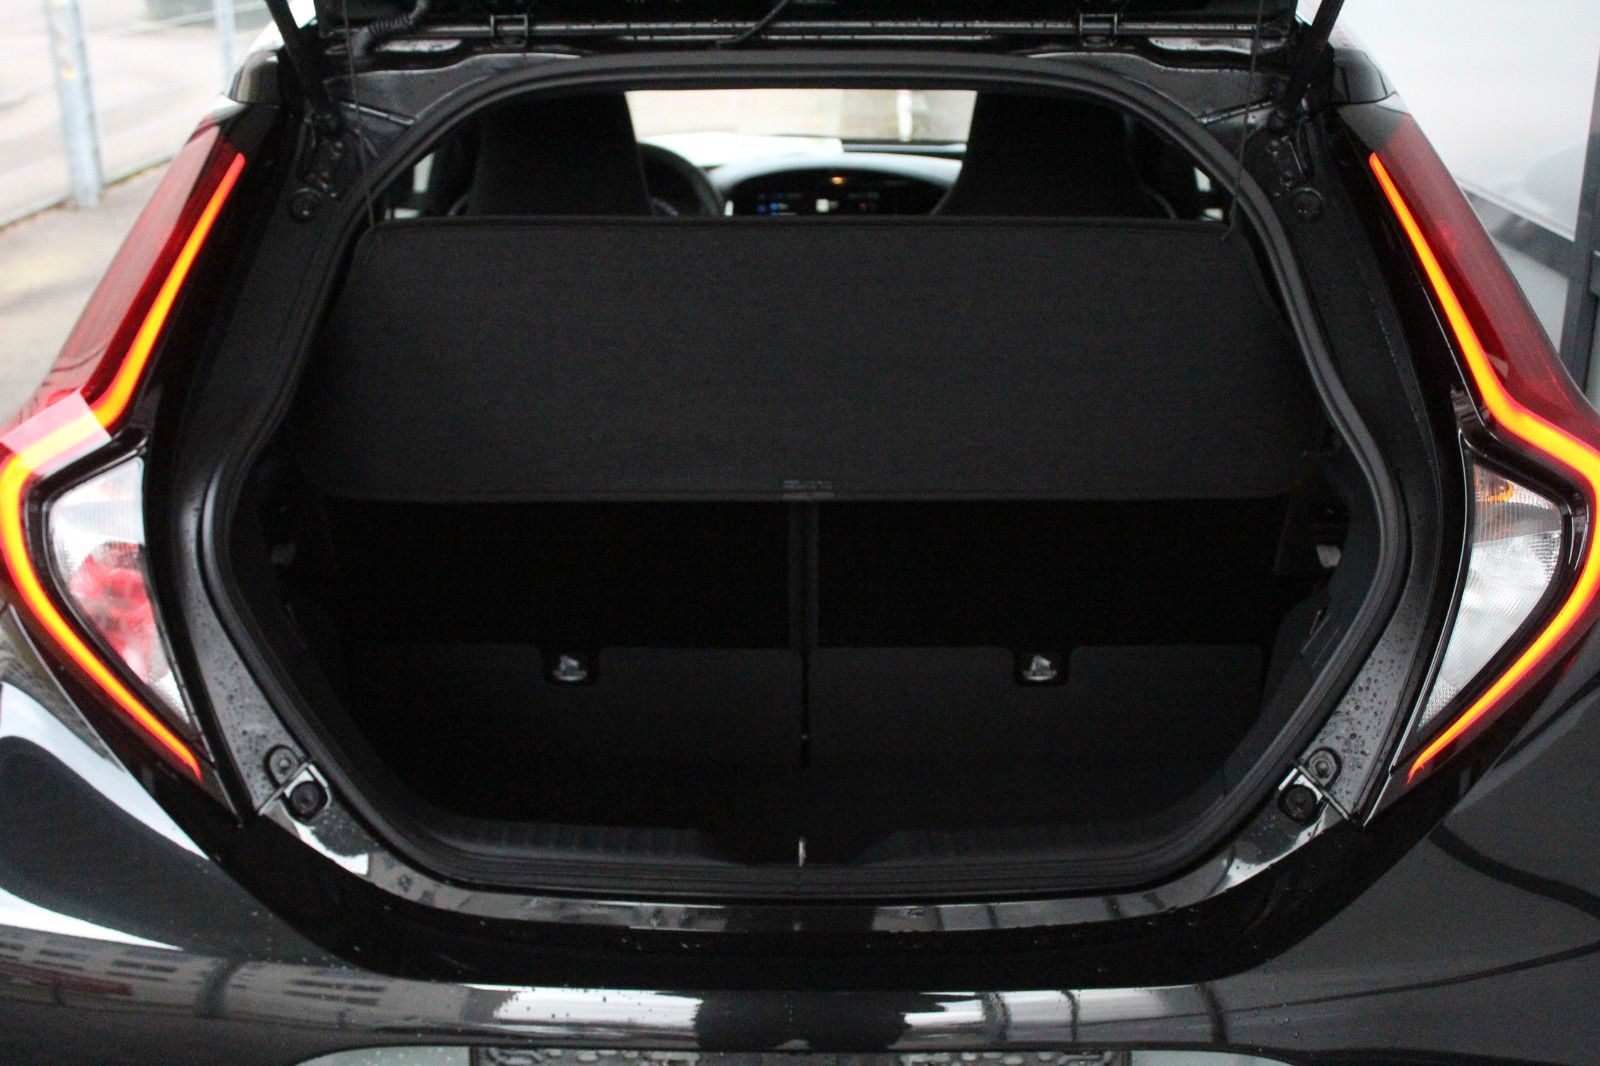 Fahrzeugabbildung Toyota Aygo X 1.0 Explore CVT,JBL,LED,NAVI,PDC